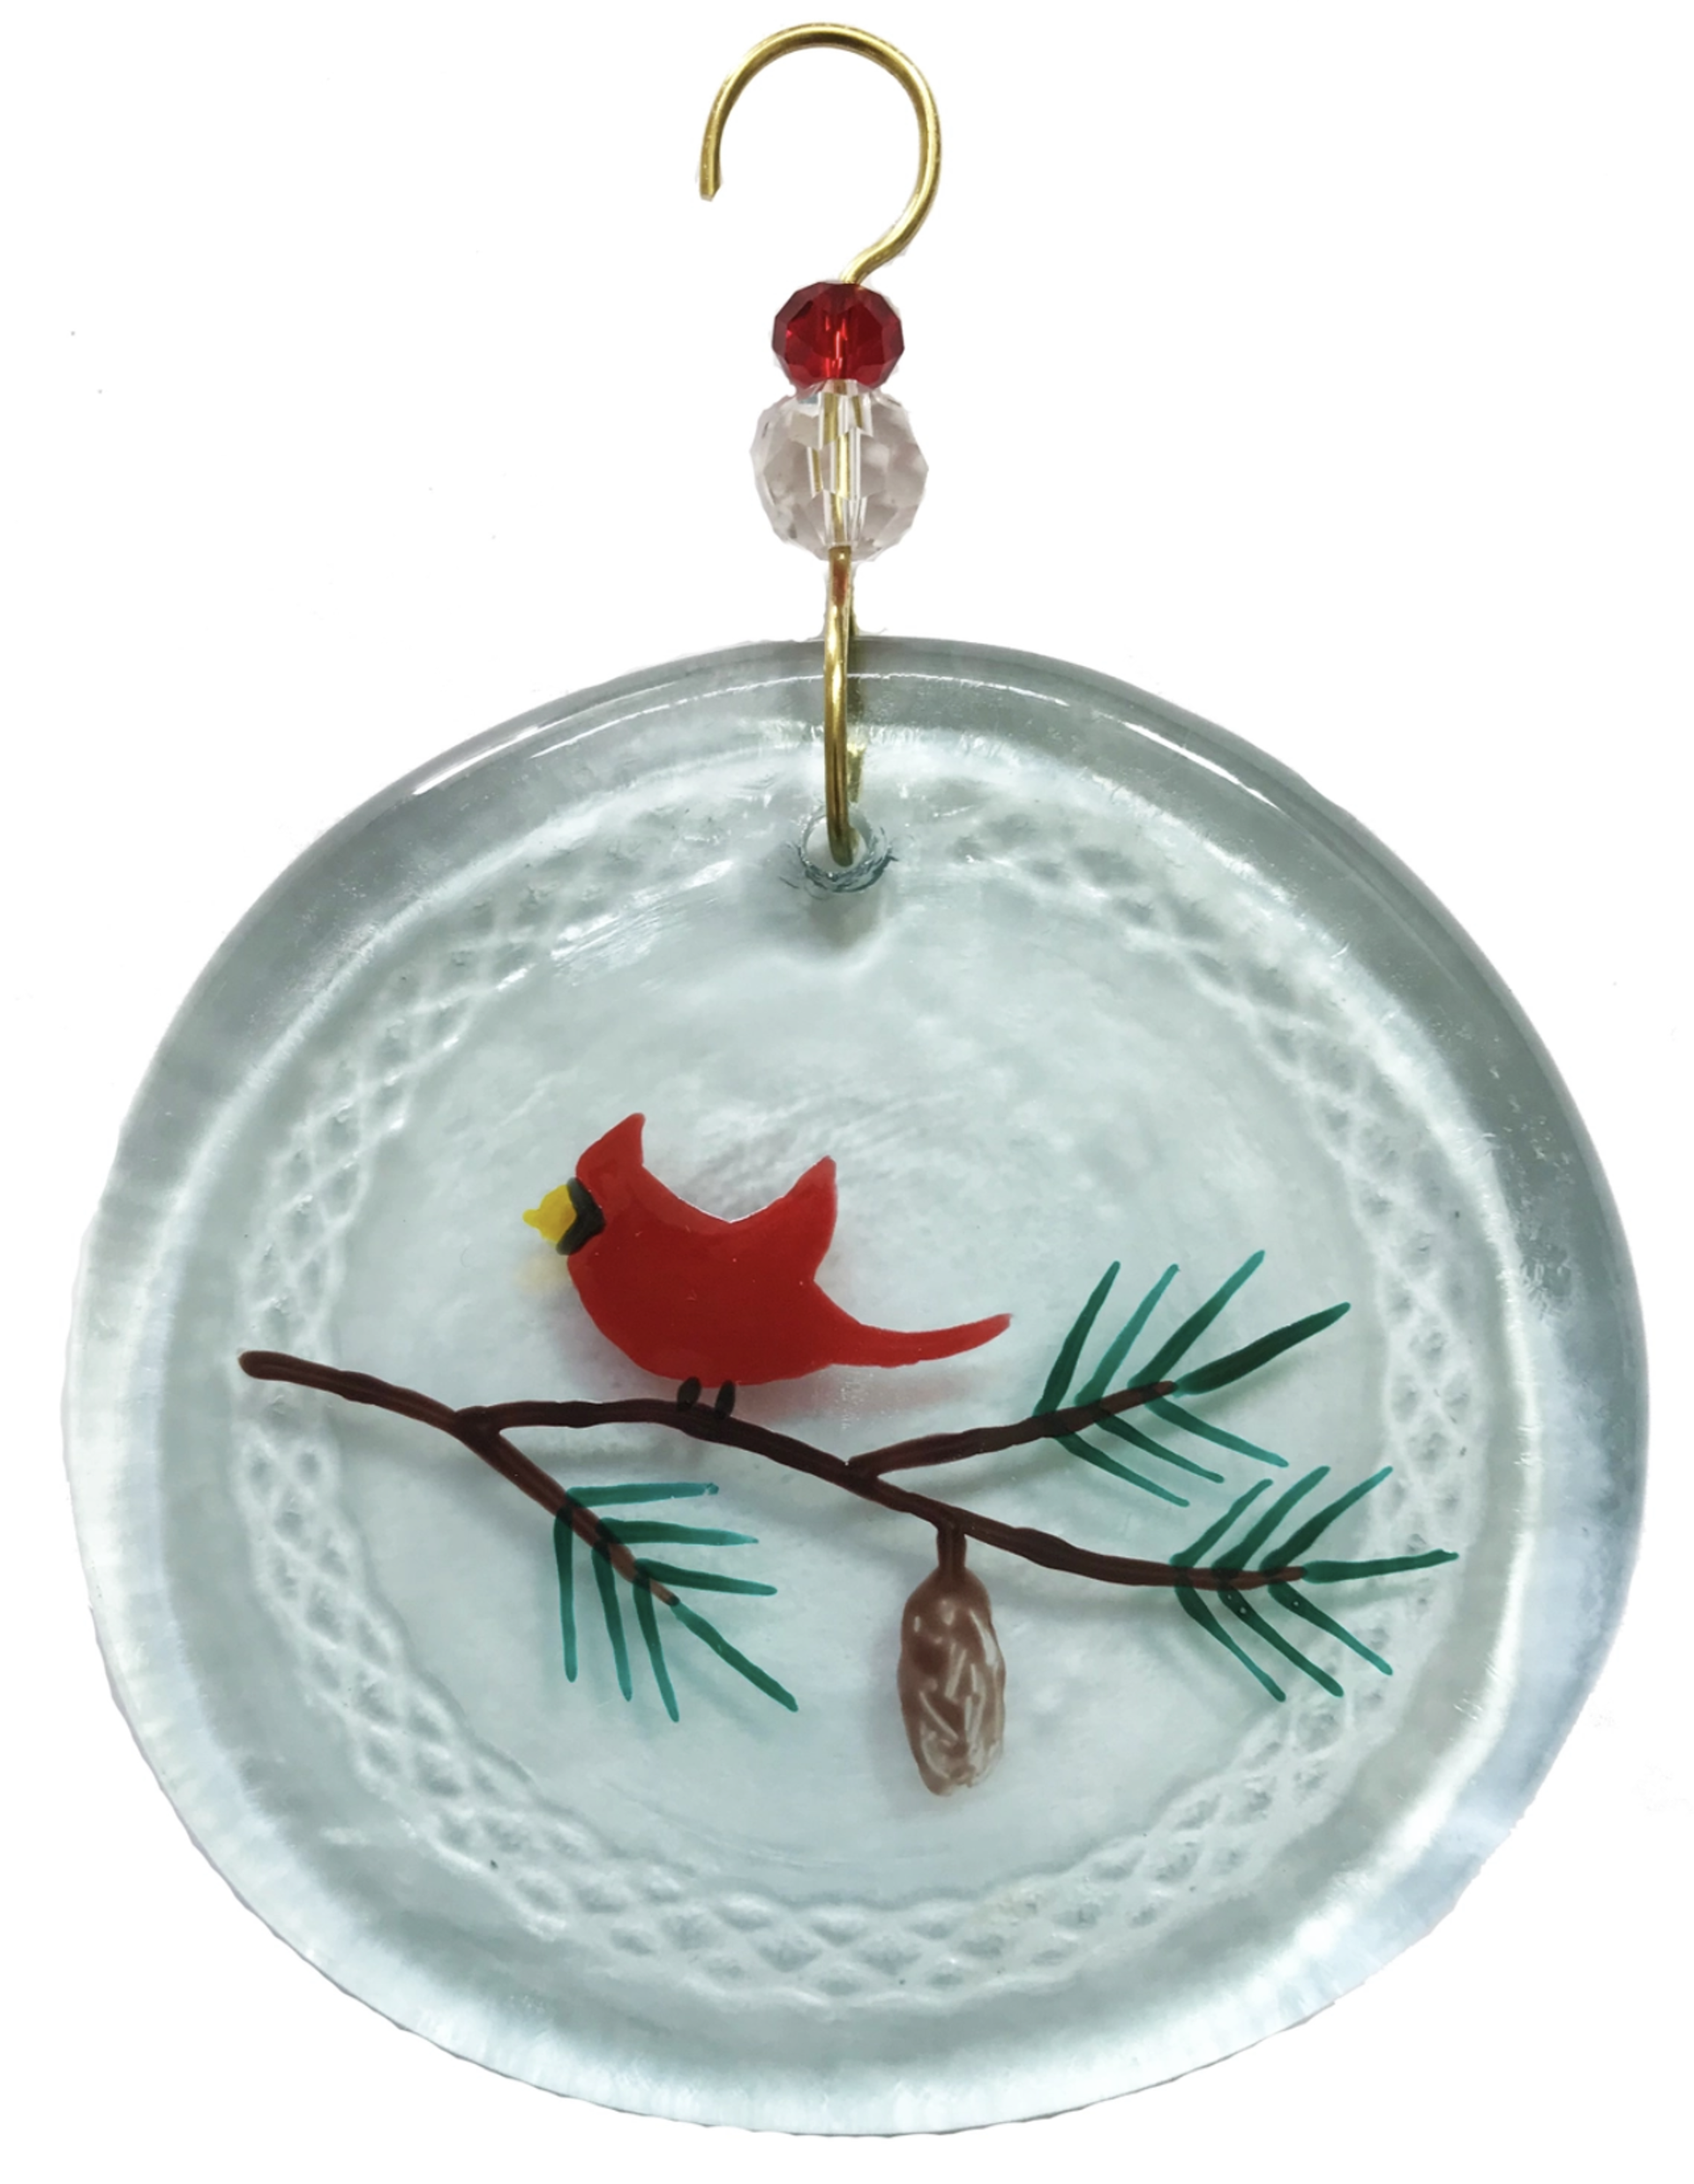 Ornament - Mini Redbird & Pine Branch by Wine Bottle Art